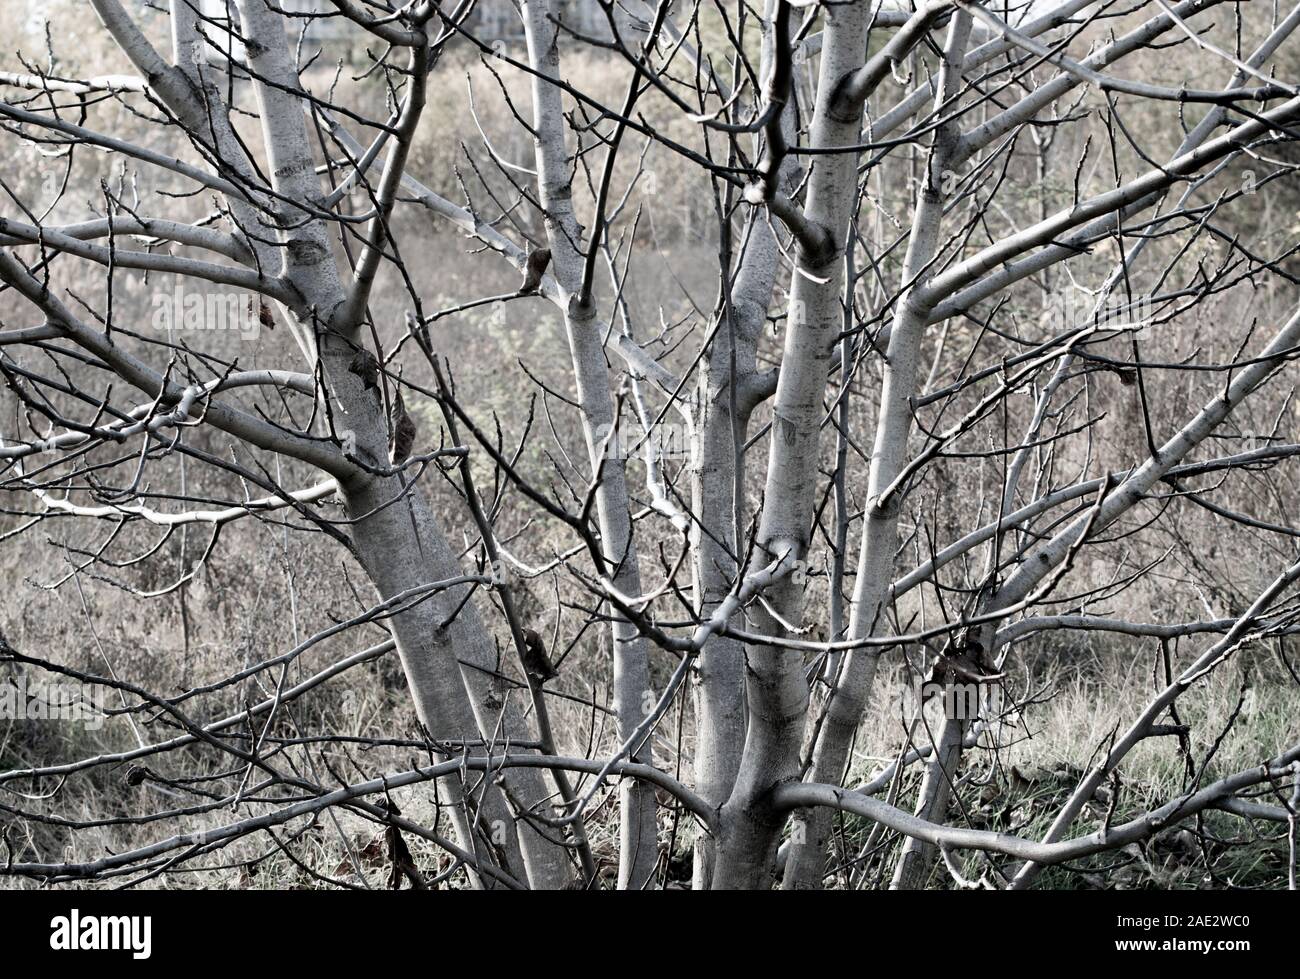 Natura nella stagione autunnale: Un albero senza foglie, apparentemente un albero di noce cresciuto spontaneamente, con tronchi multipli. Foto Stock